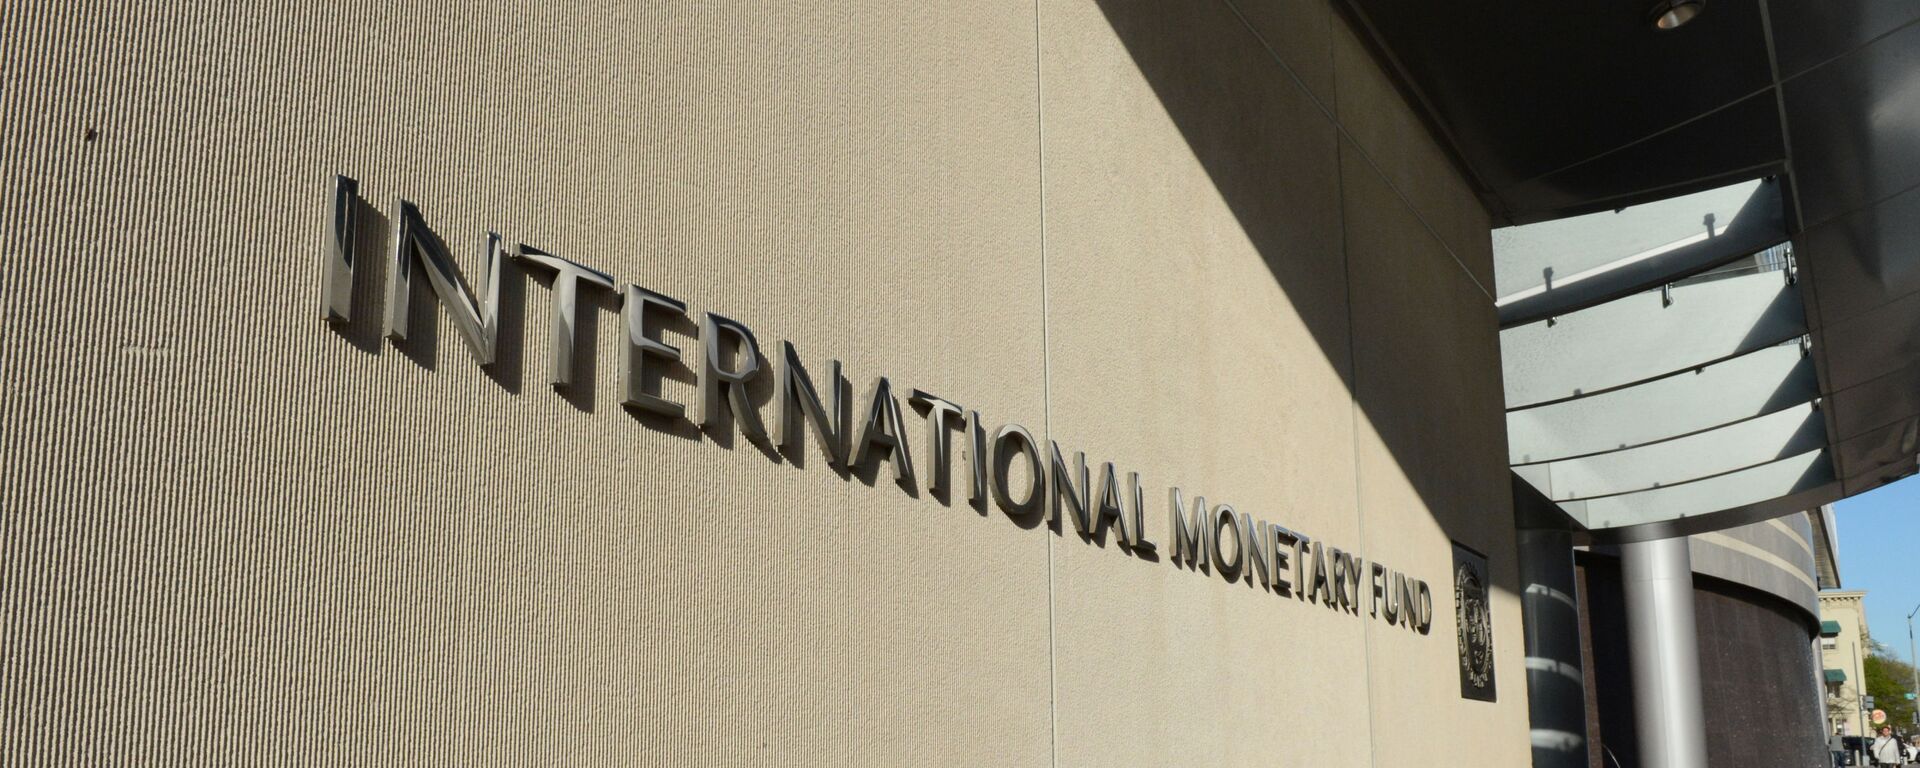 Табличка с логотипом Международного валютного фонда на стене здания МВФ - Sputnik Грузия, 1920, 04.08.2021